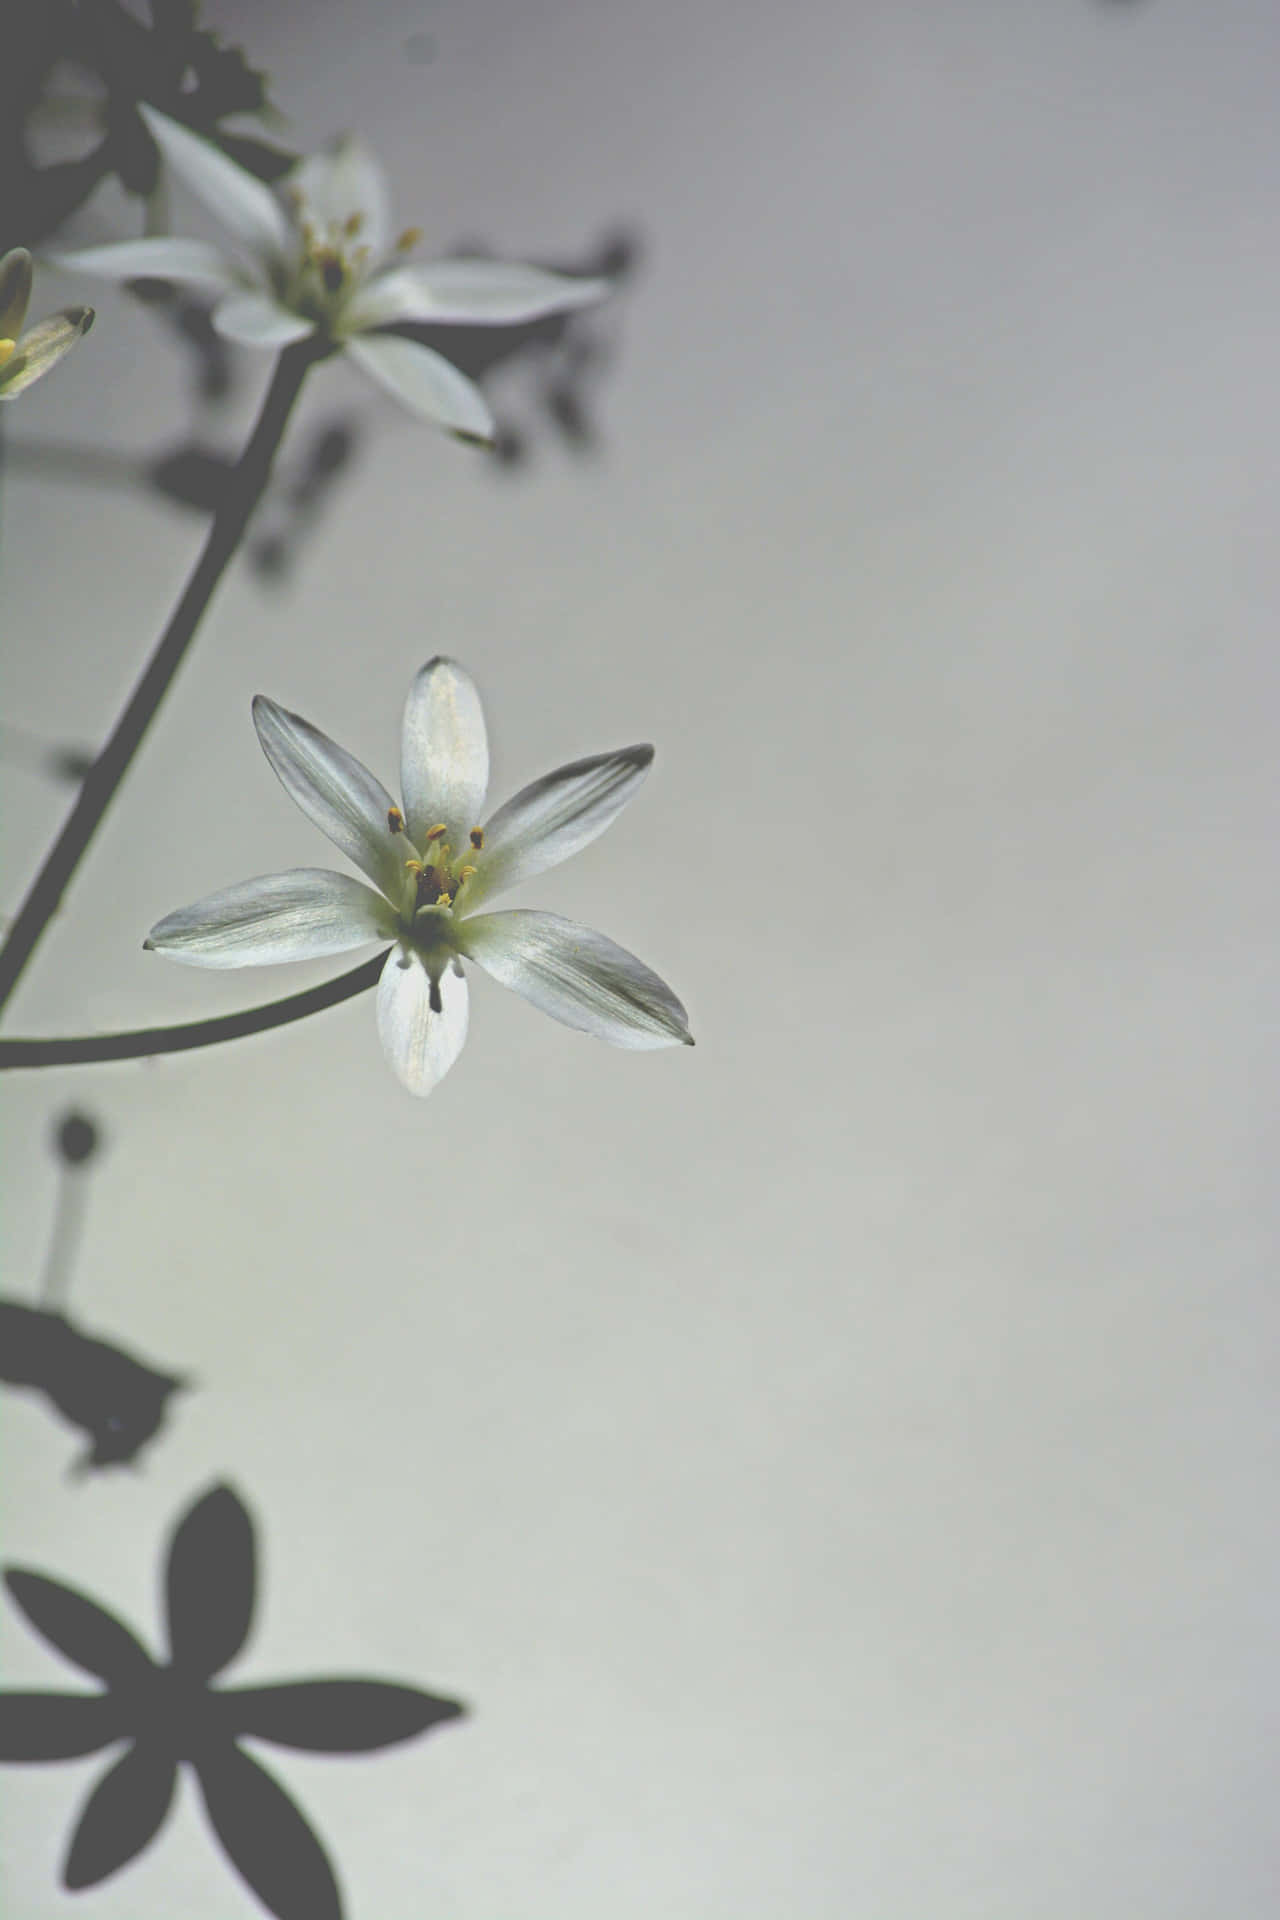 Ethereal White Flower Against Gray Backdrop Wallpaper